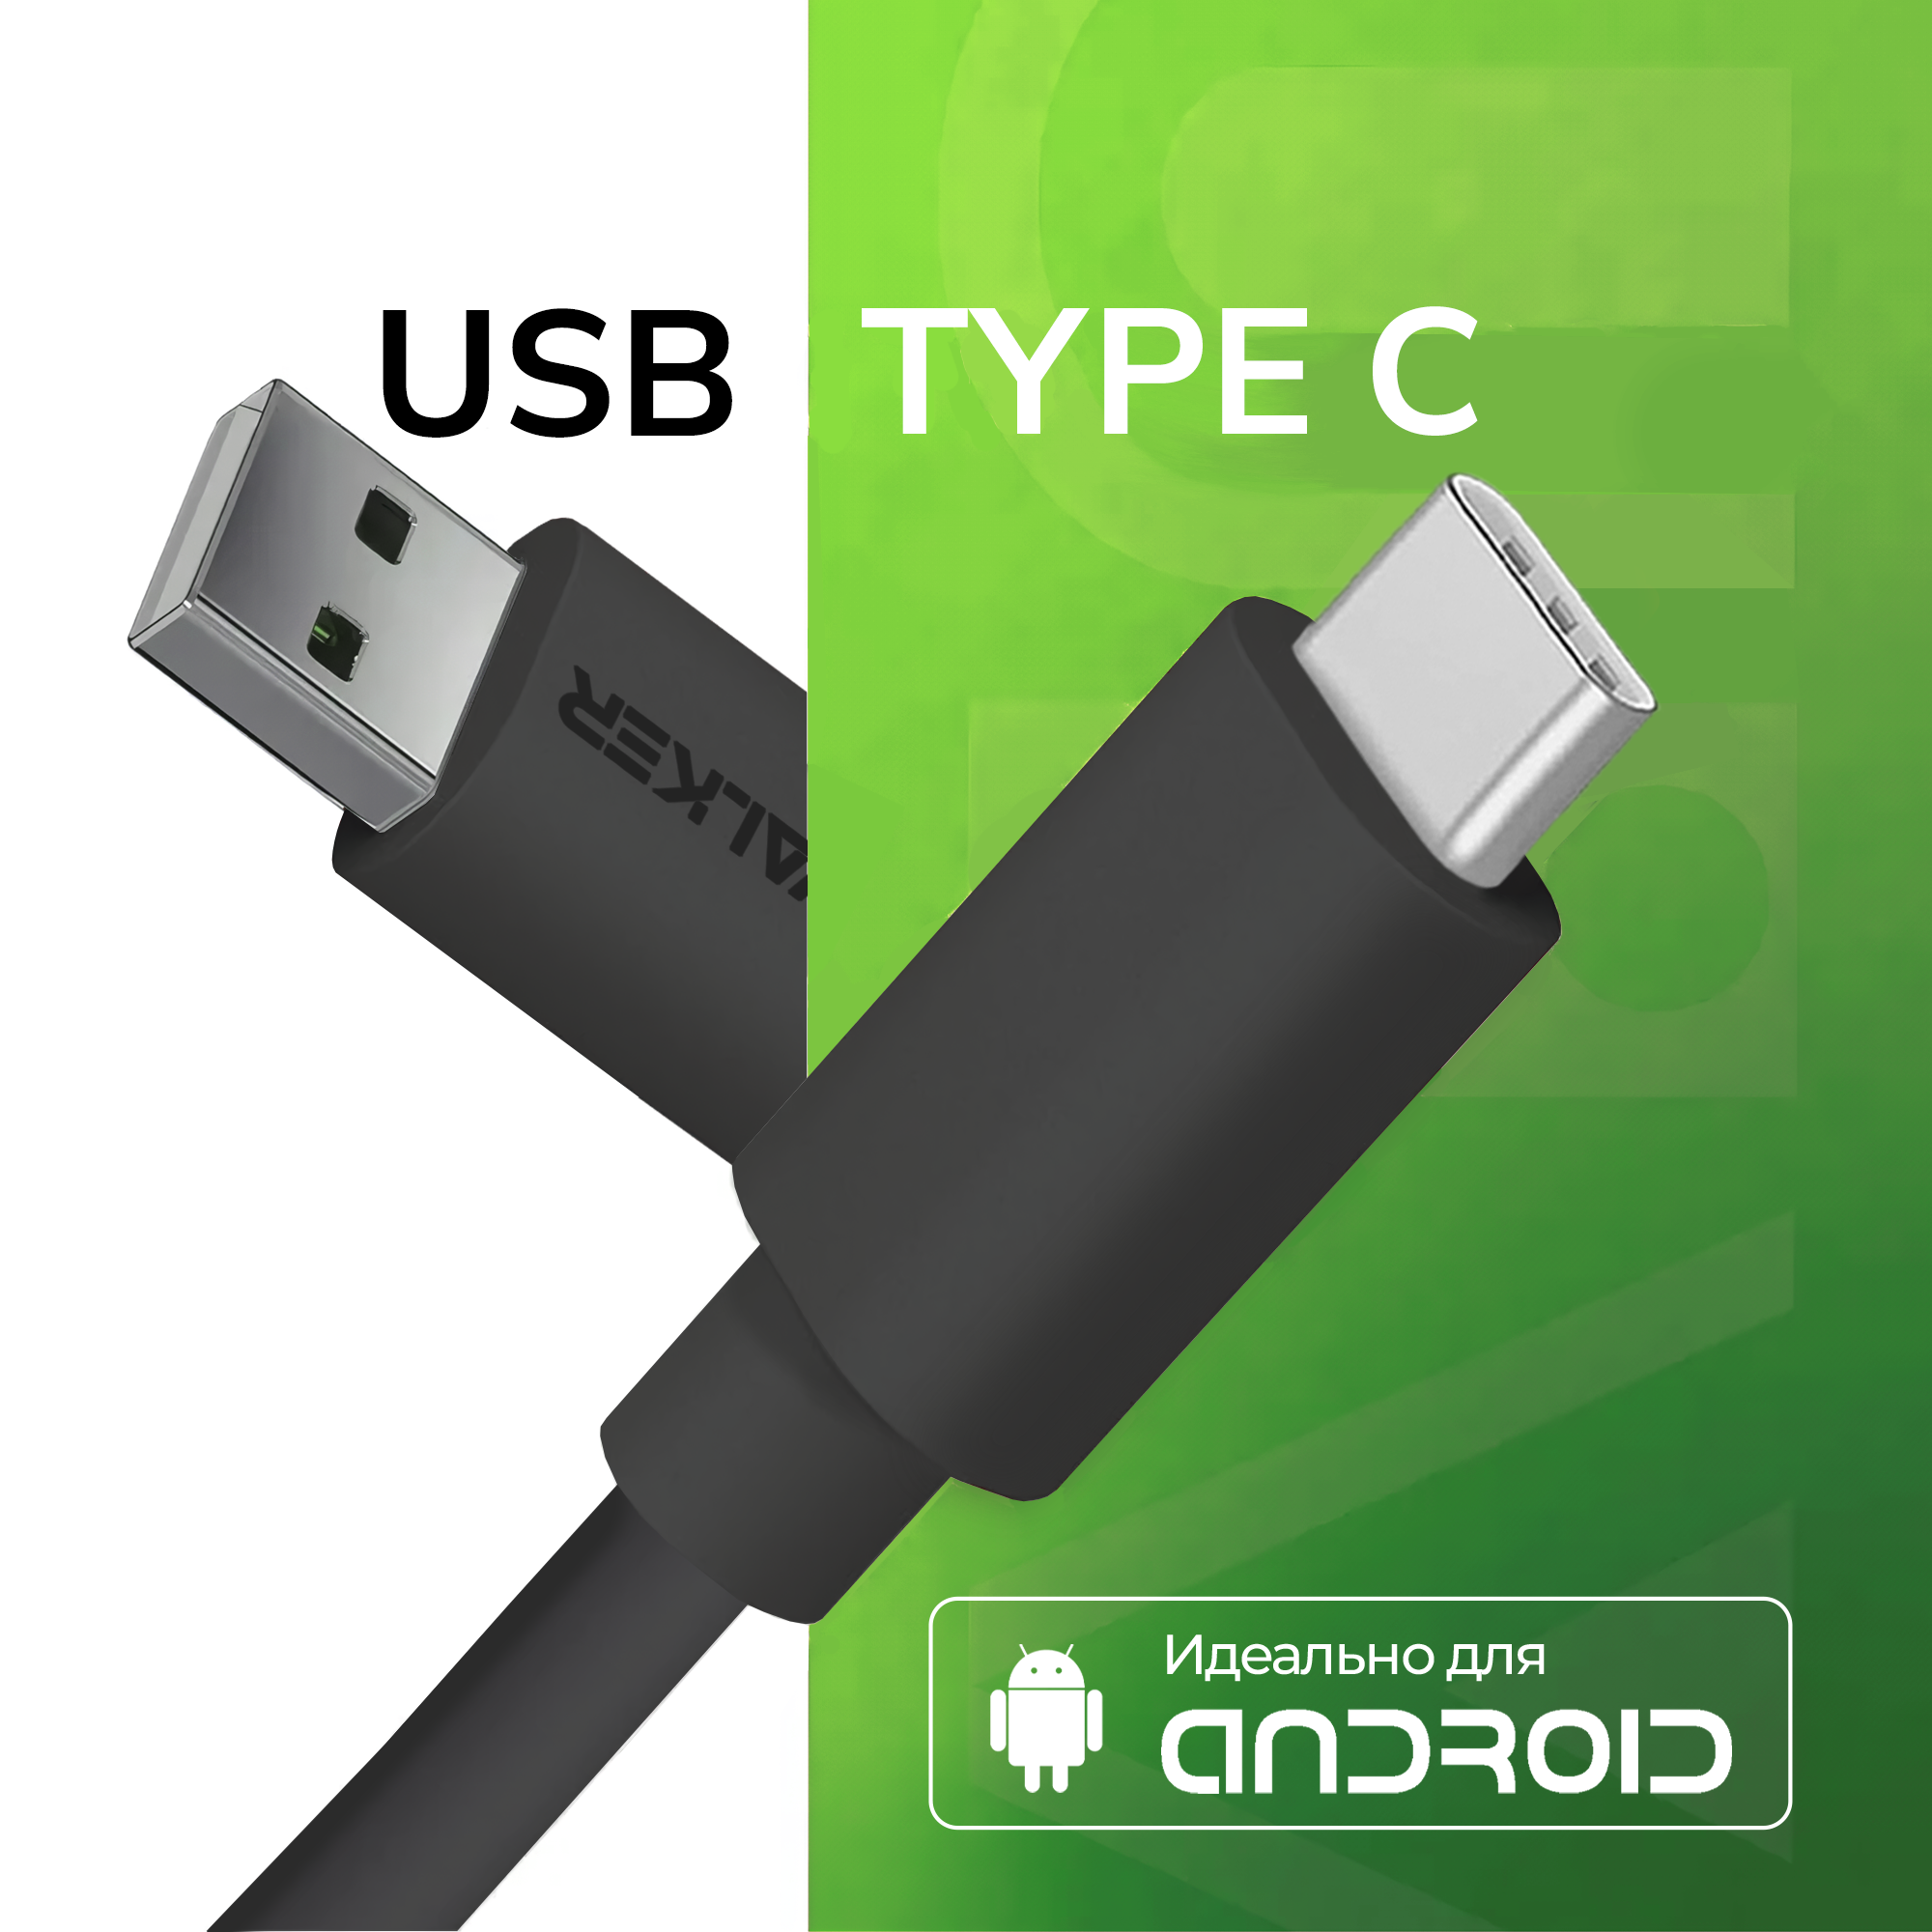 Кабель USB WALKER C110 для TYPE-C в пакете